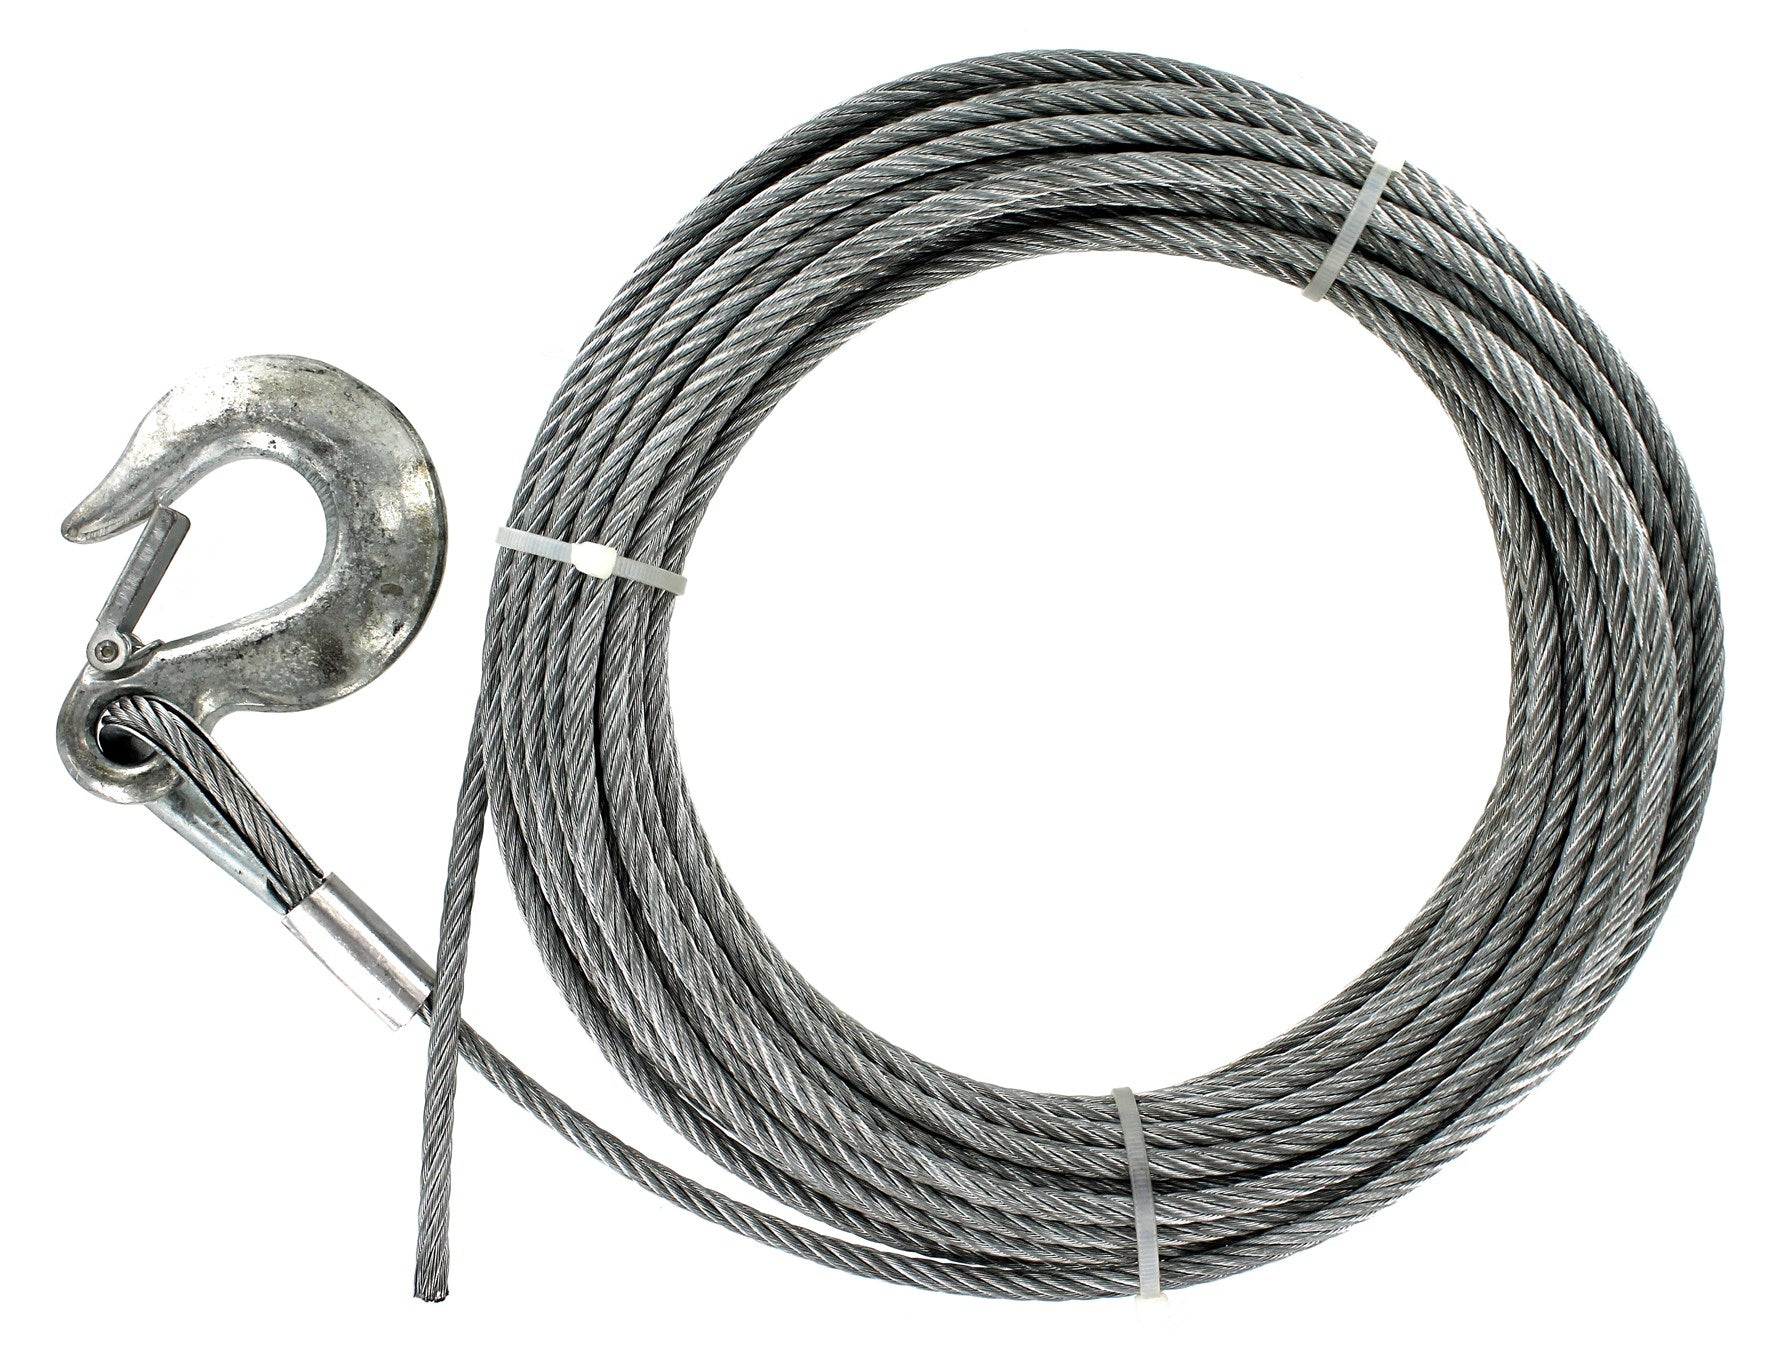 Baron, Baron 09005 50' 1/4 7X19 Galvanized Pre-Cut Cable